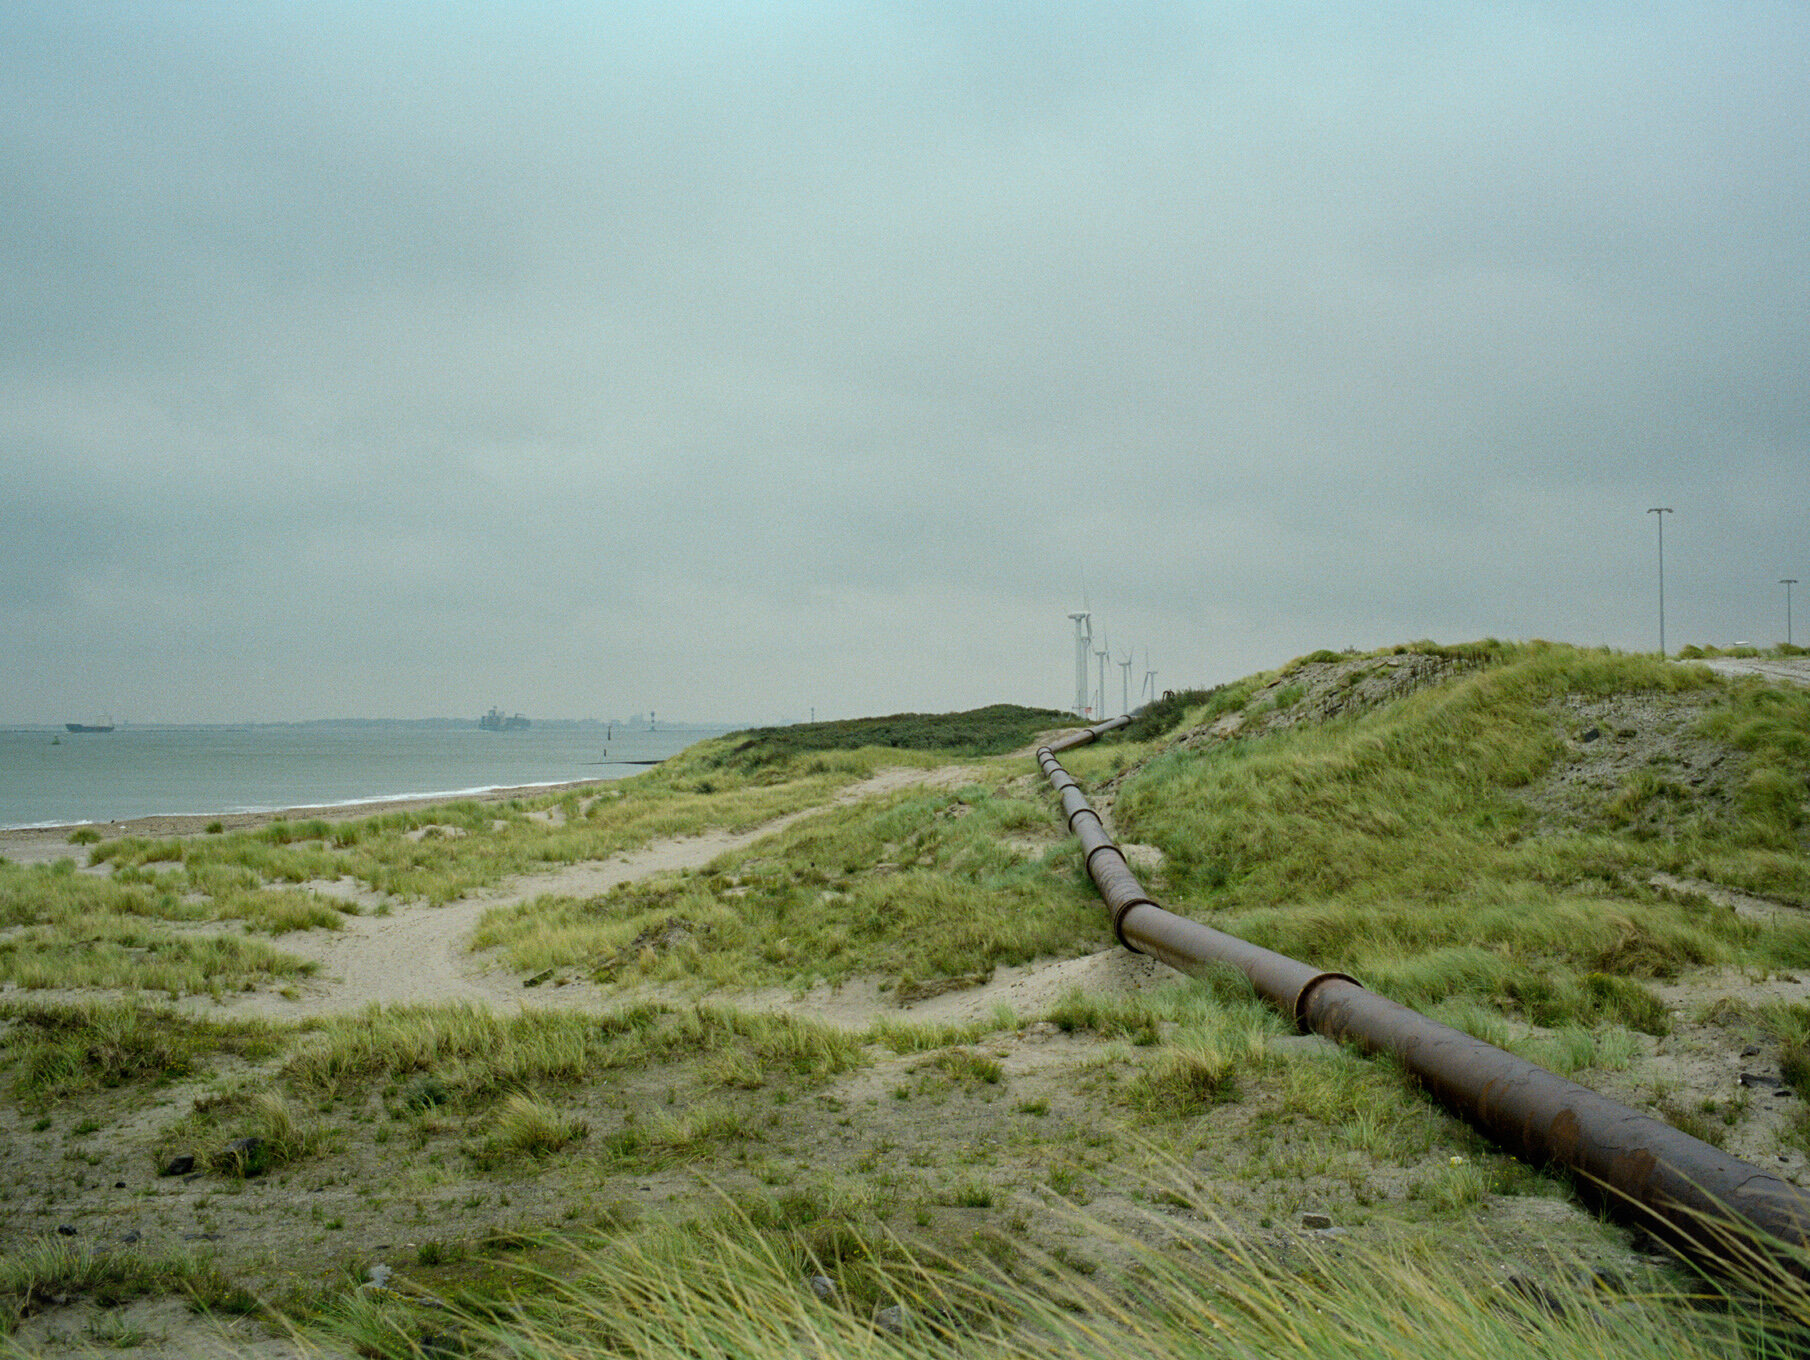   Oil pipeline,  Maasvlakte 2 area, 2010  